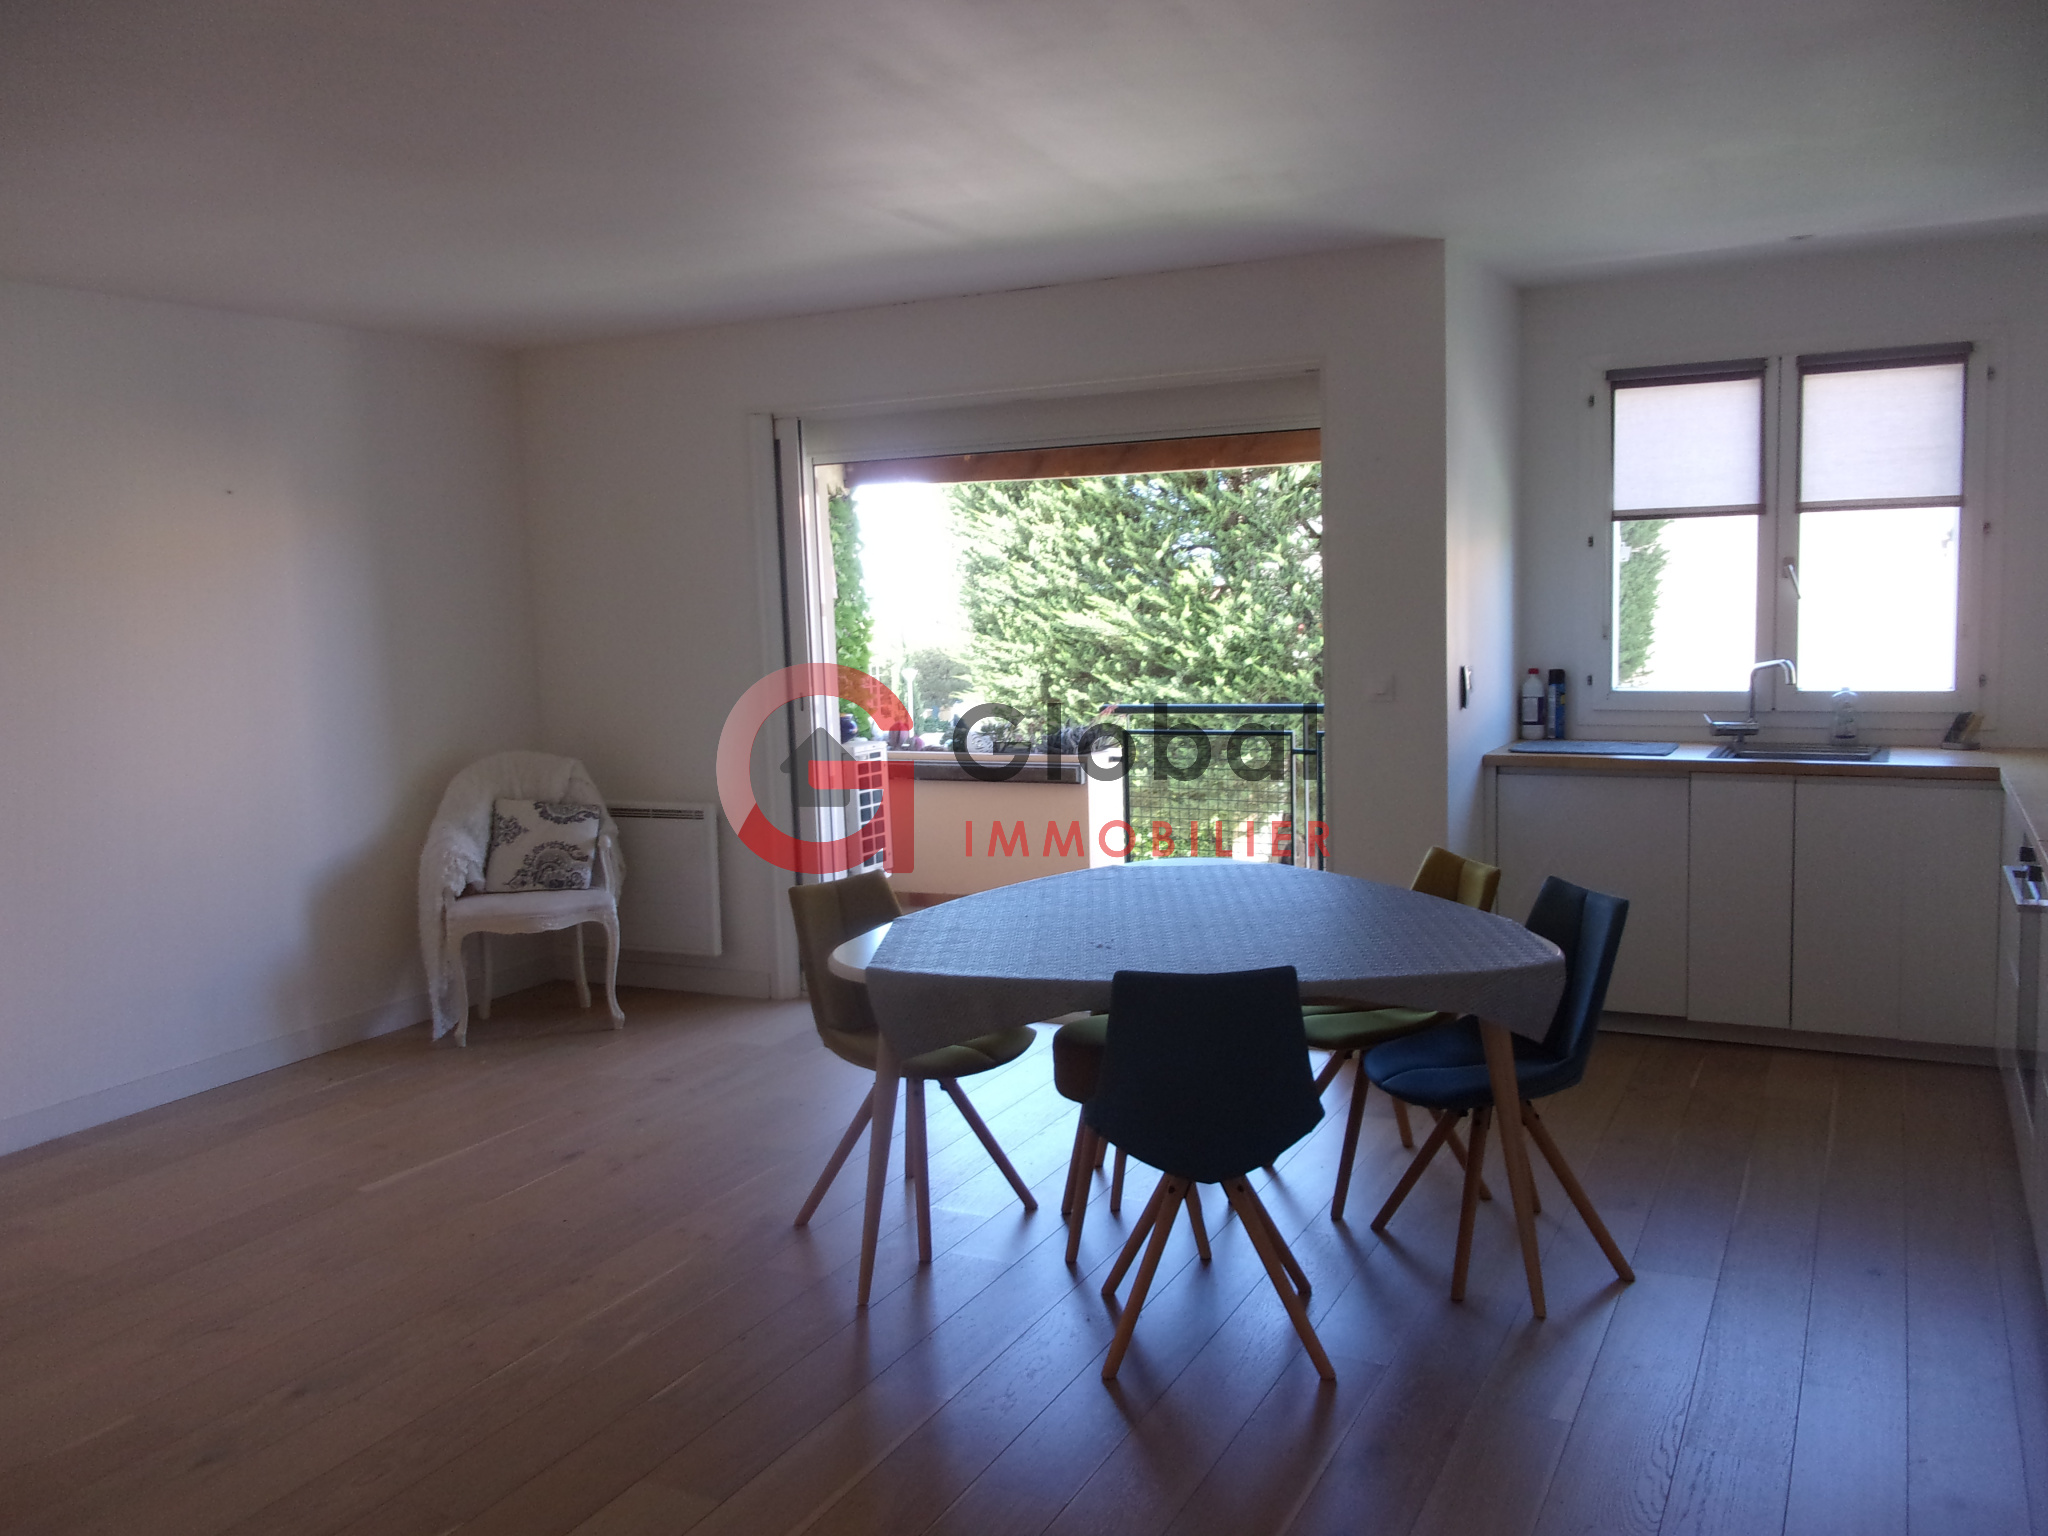 Vente Appartement 67m² 3 Pièces à Sausset-les-Pins (13960) - Global Immobilier